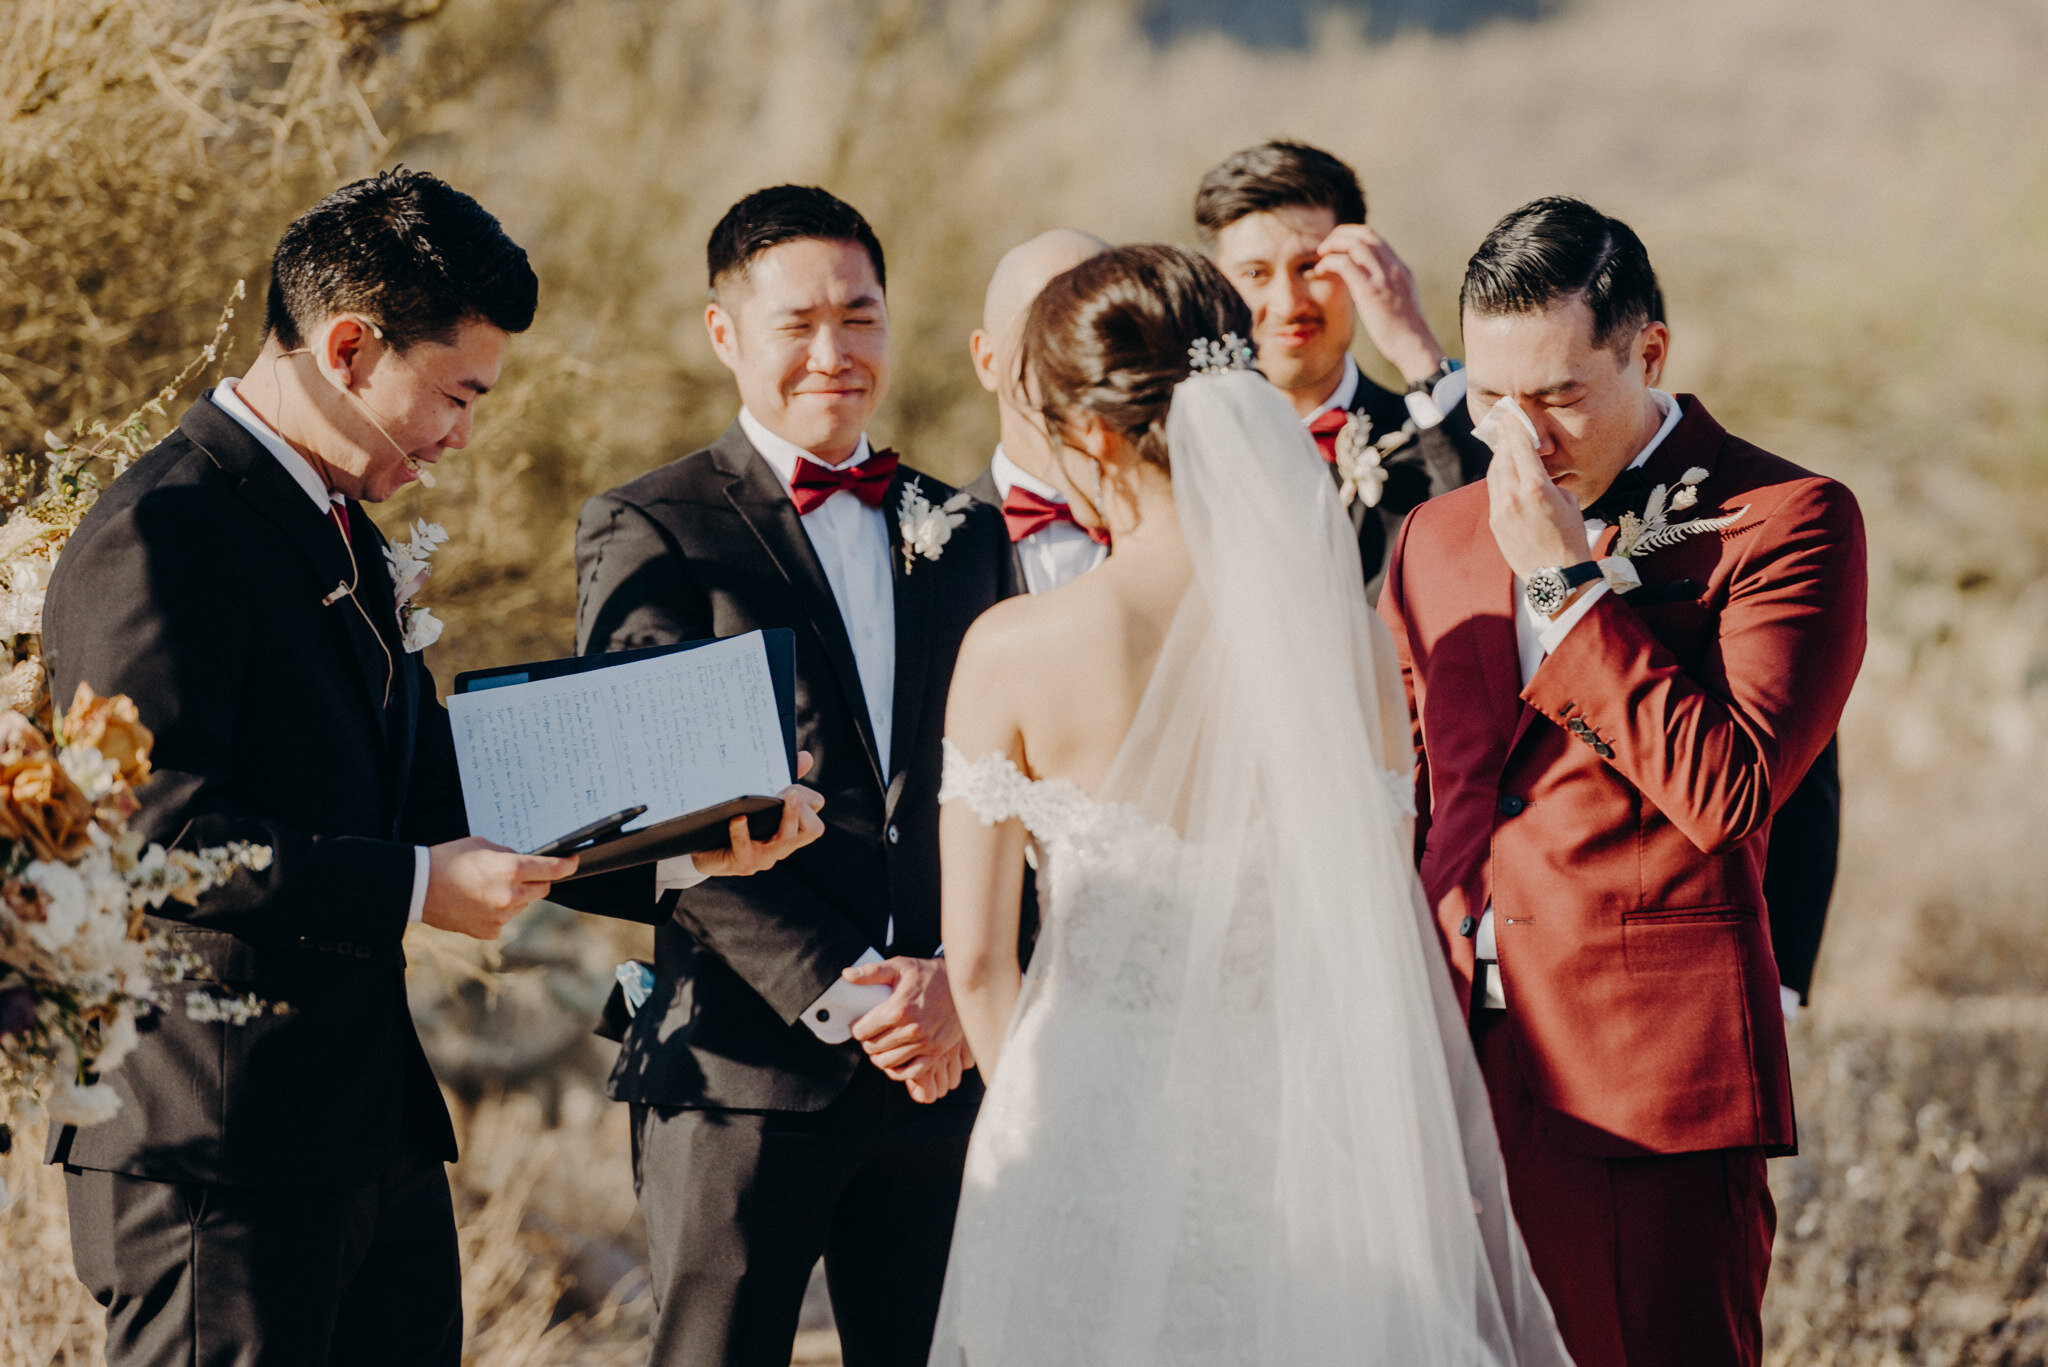 california wedding photograhers - desert elopement - supersition mountains - isaiahandtaylor.com-73.jpg